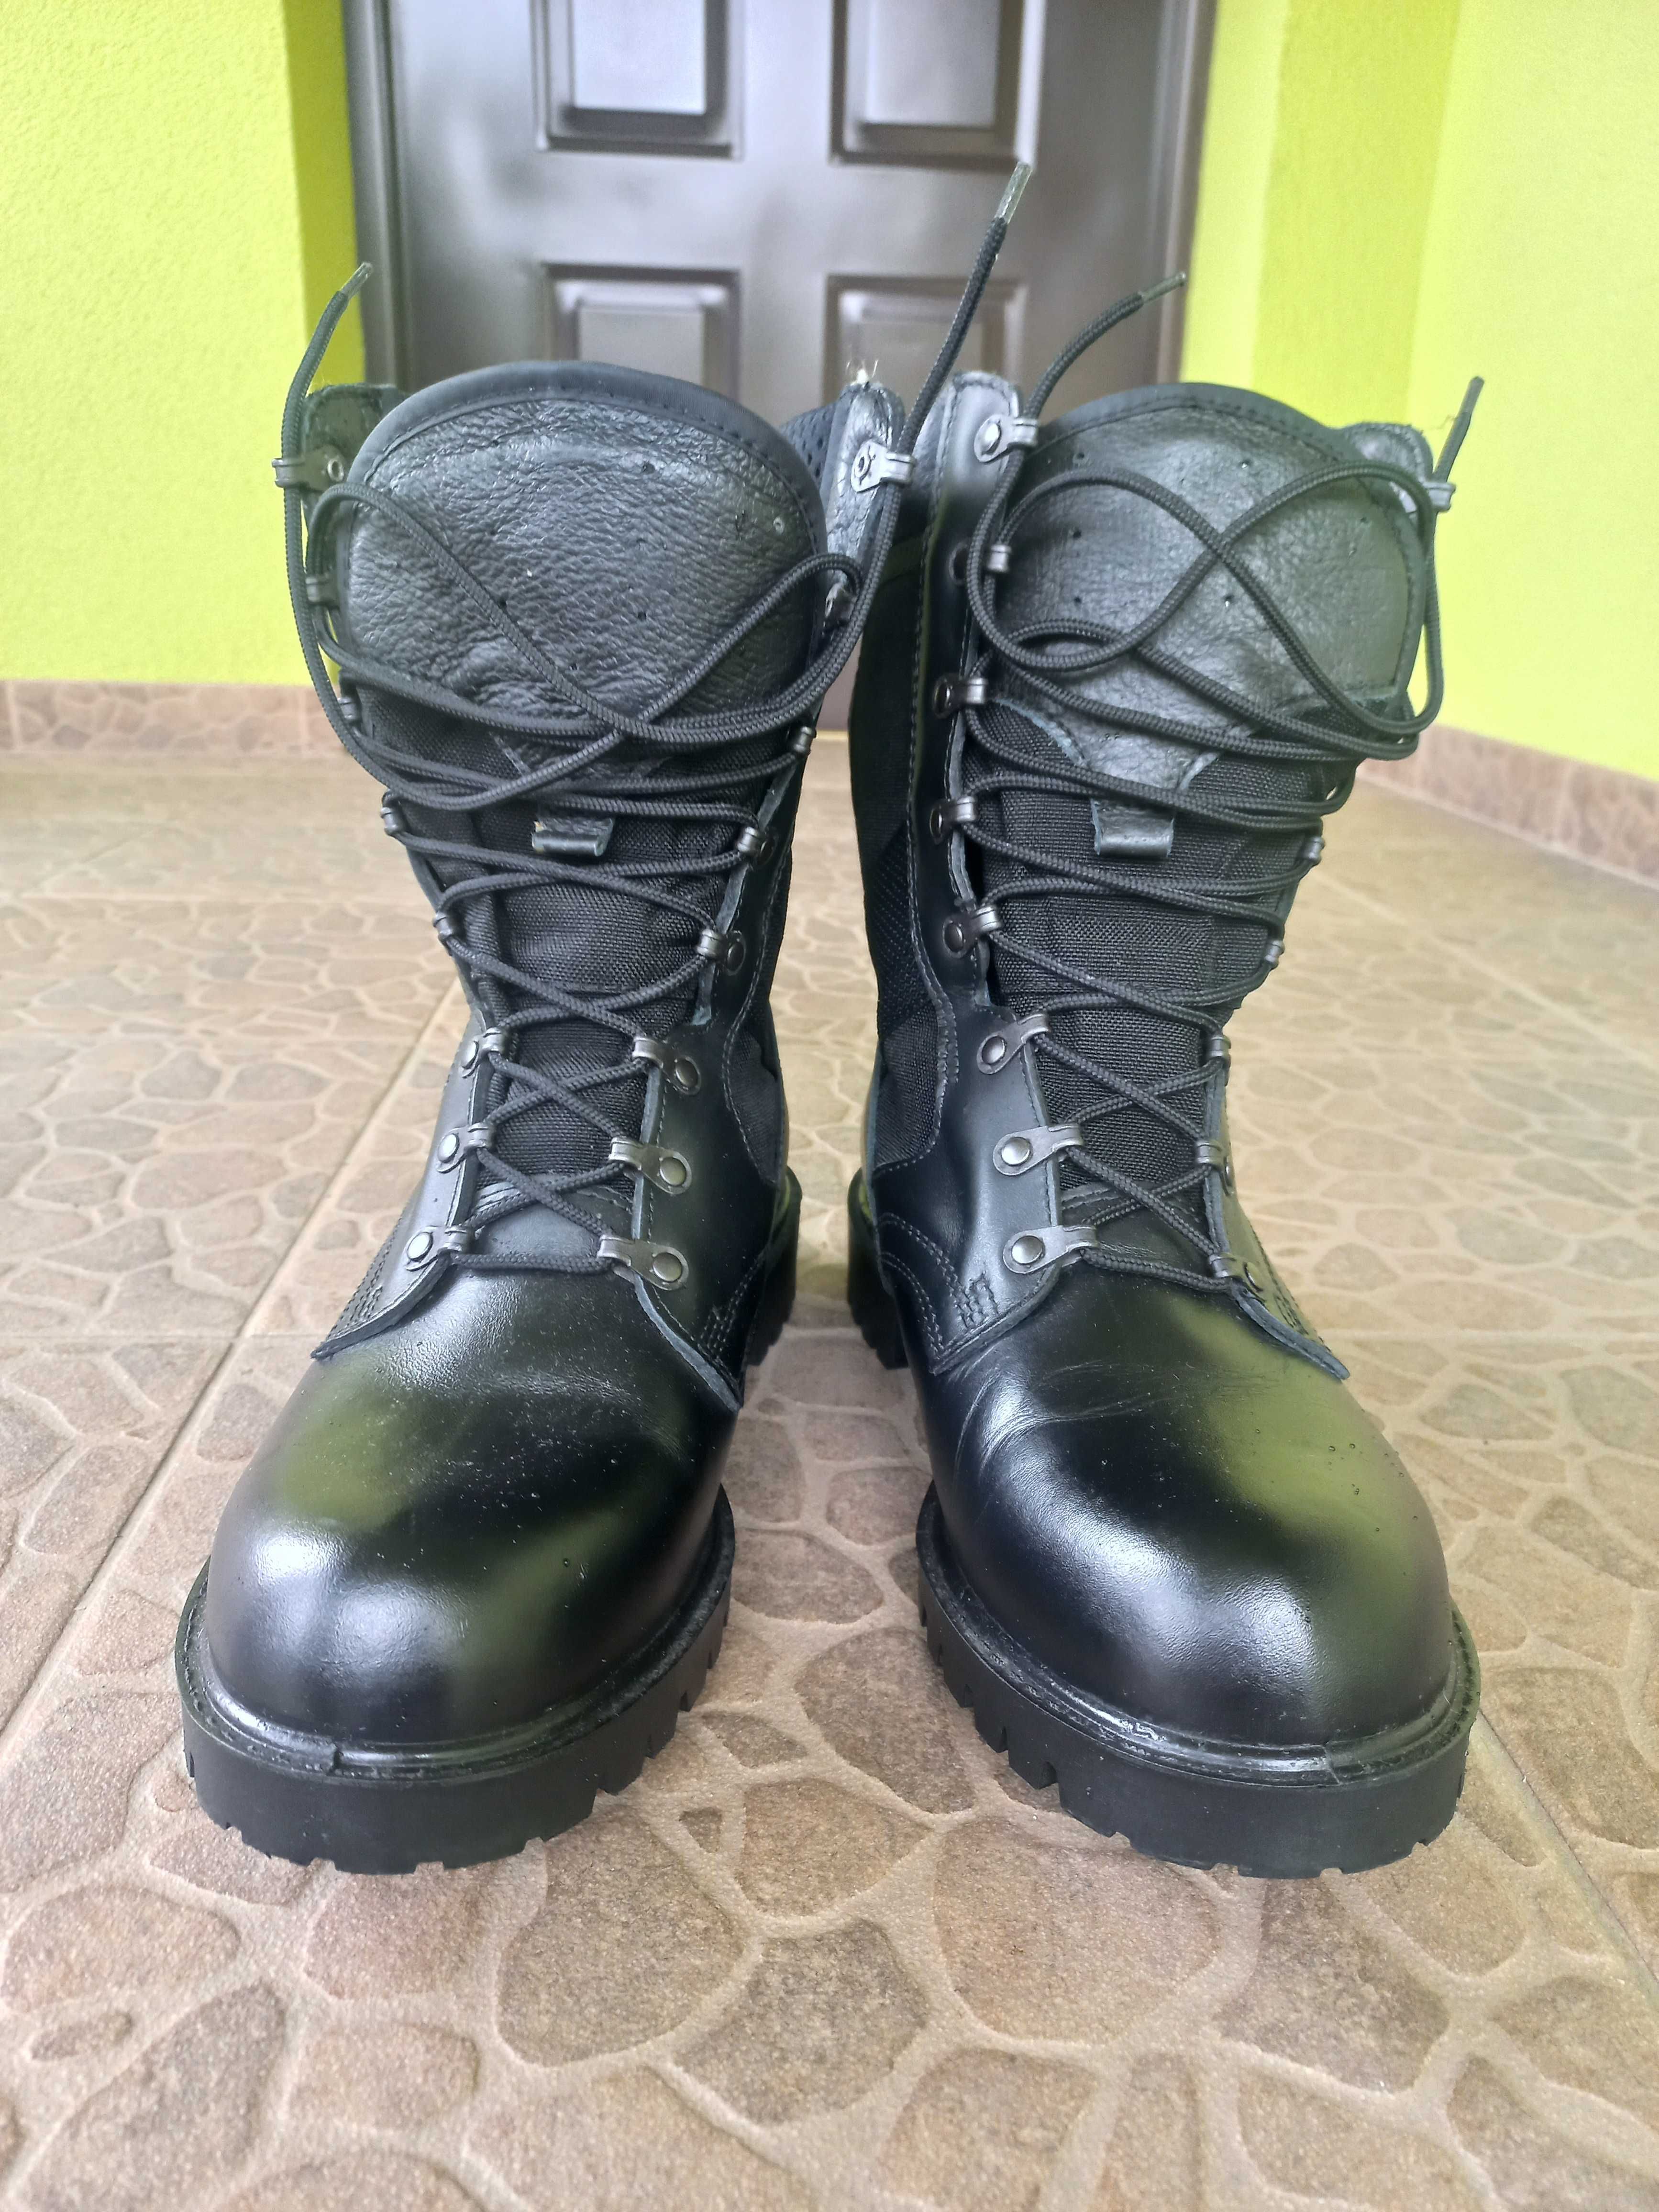 Buty wojskowe czarne wzór 926 Mon roz.2.75 (43)